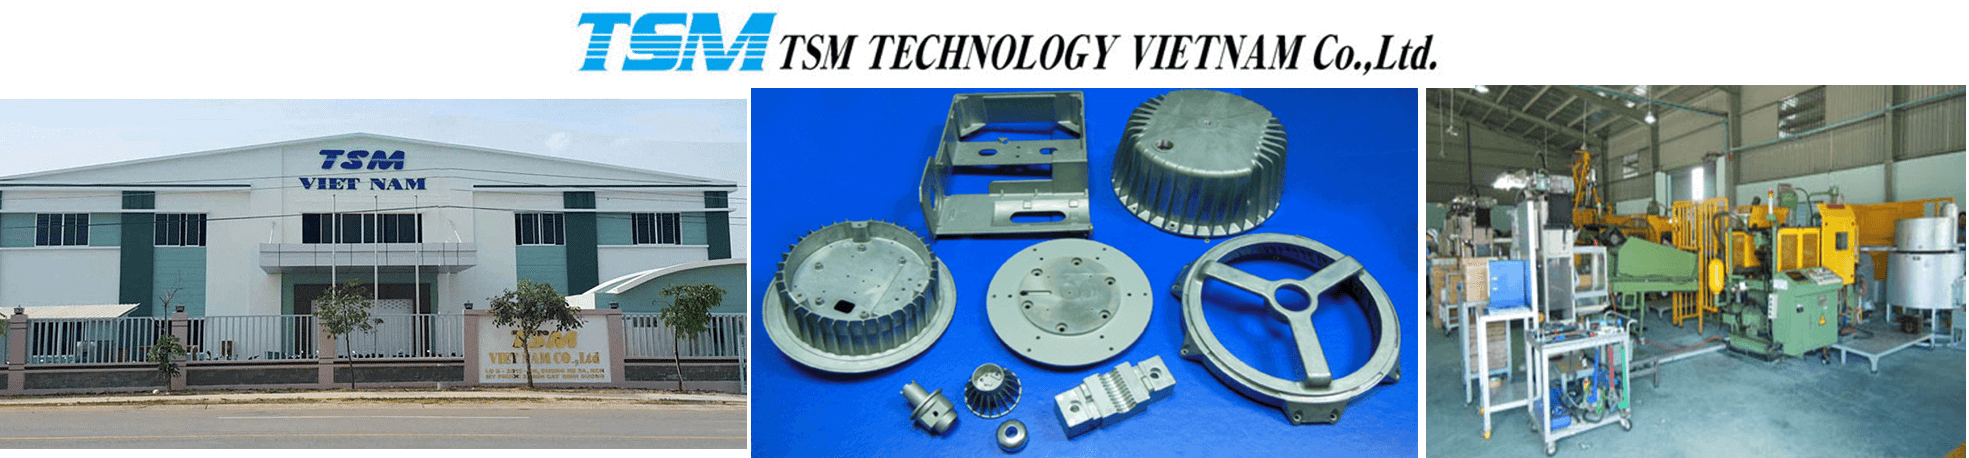 TSM テクノロジーベトナム有限会社